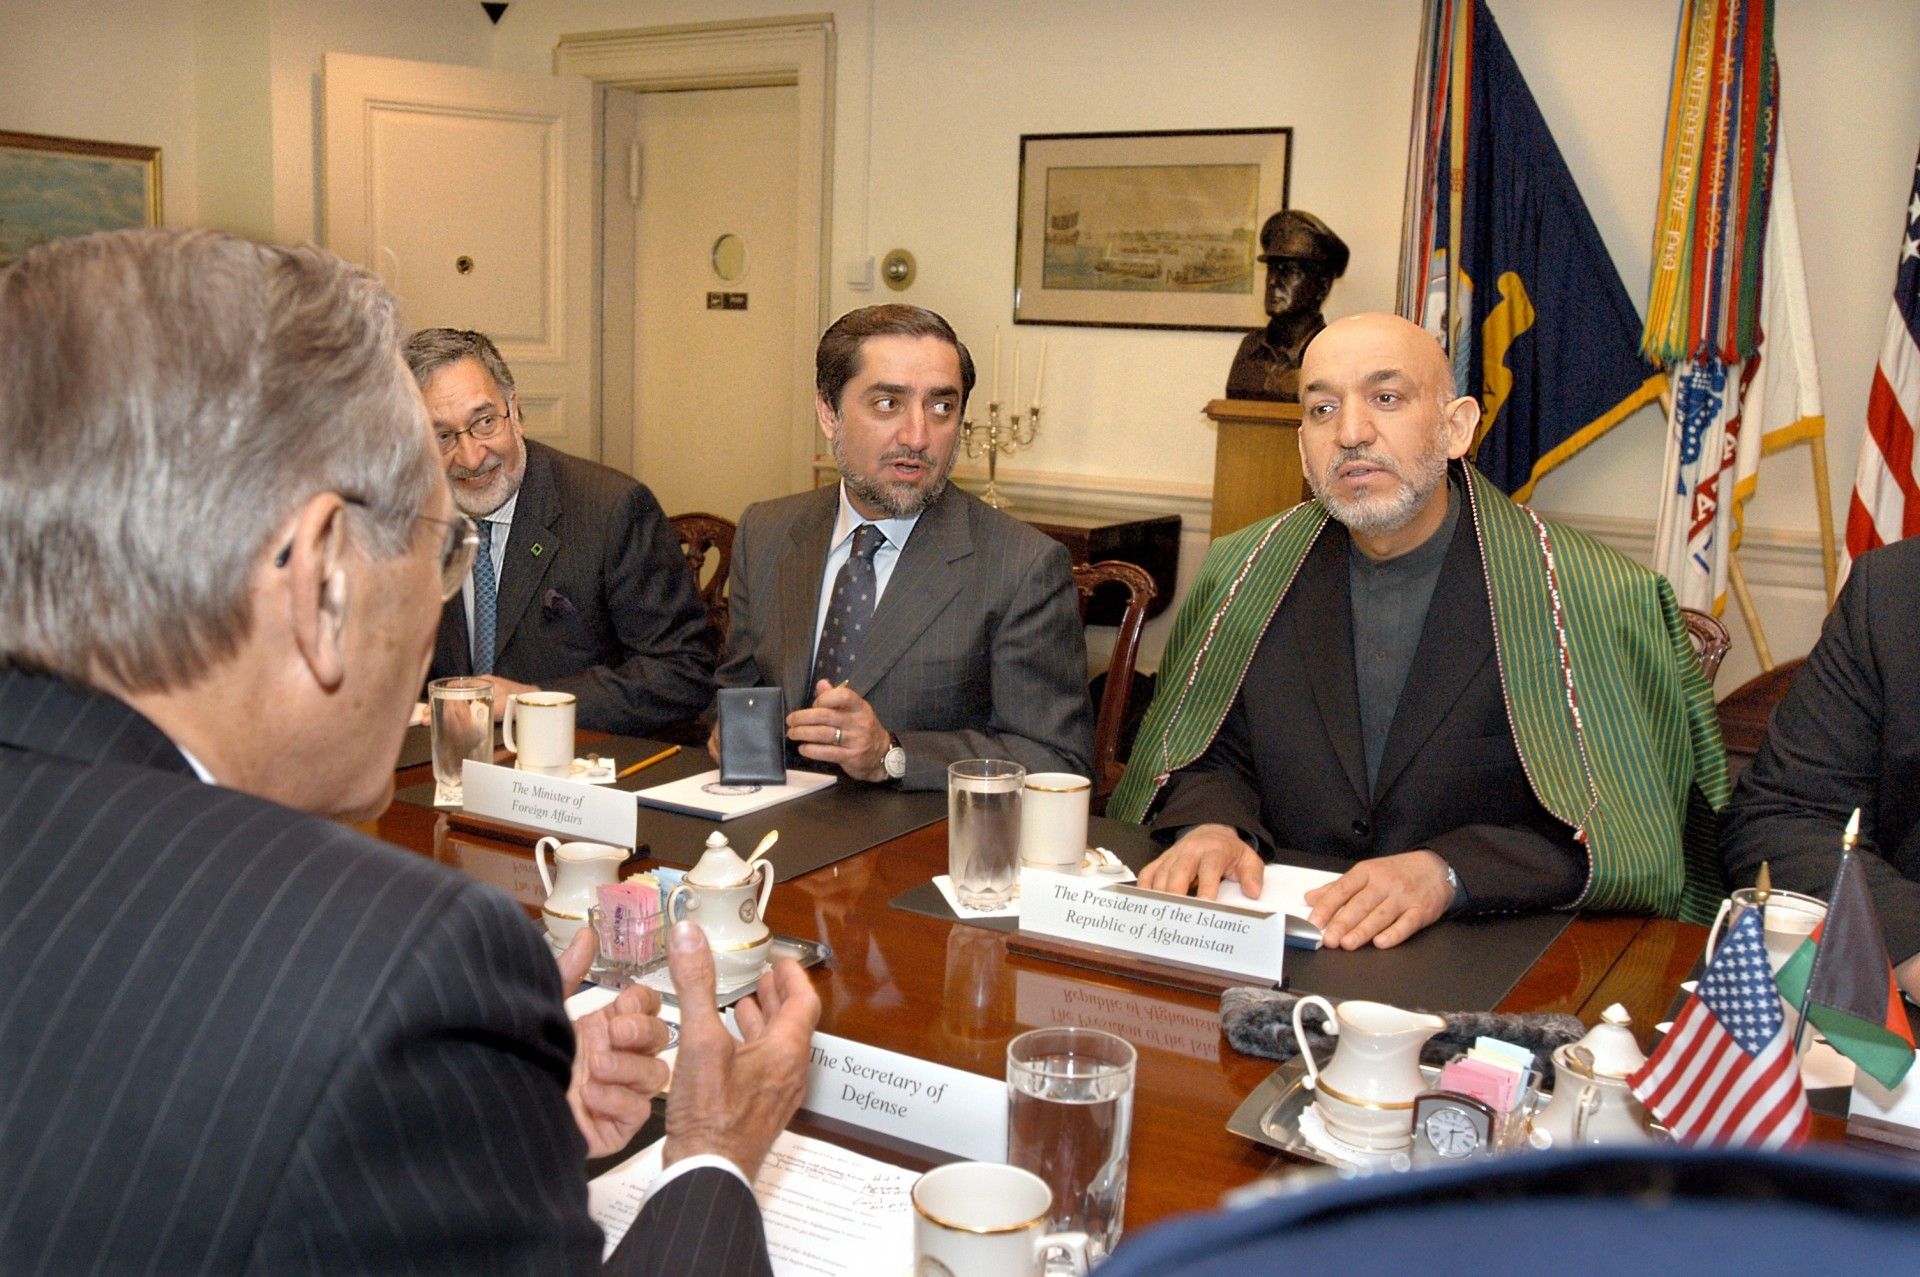 Obecny prezydent Afganistanu Hamid Karzaj oraz jeden z kandydatów biorących udział w drugiej turze wyborów prezydenckich Abdullah Abdullah w rozmowie z sekretarzem obrony USA Donaldem Rumsfeldem w 2005 roku. Fot. R.Ward/US DoD.